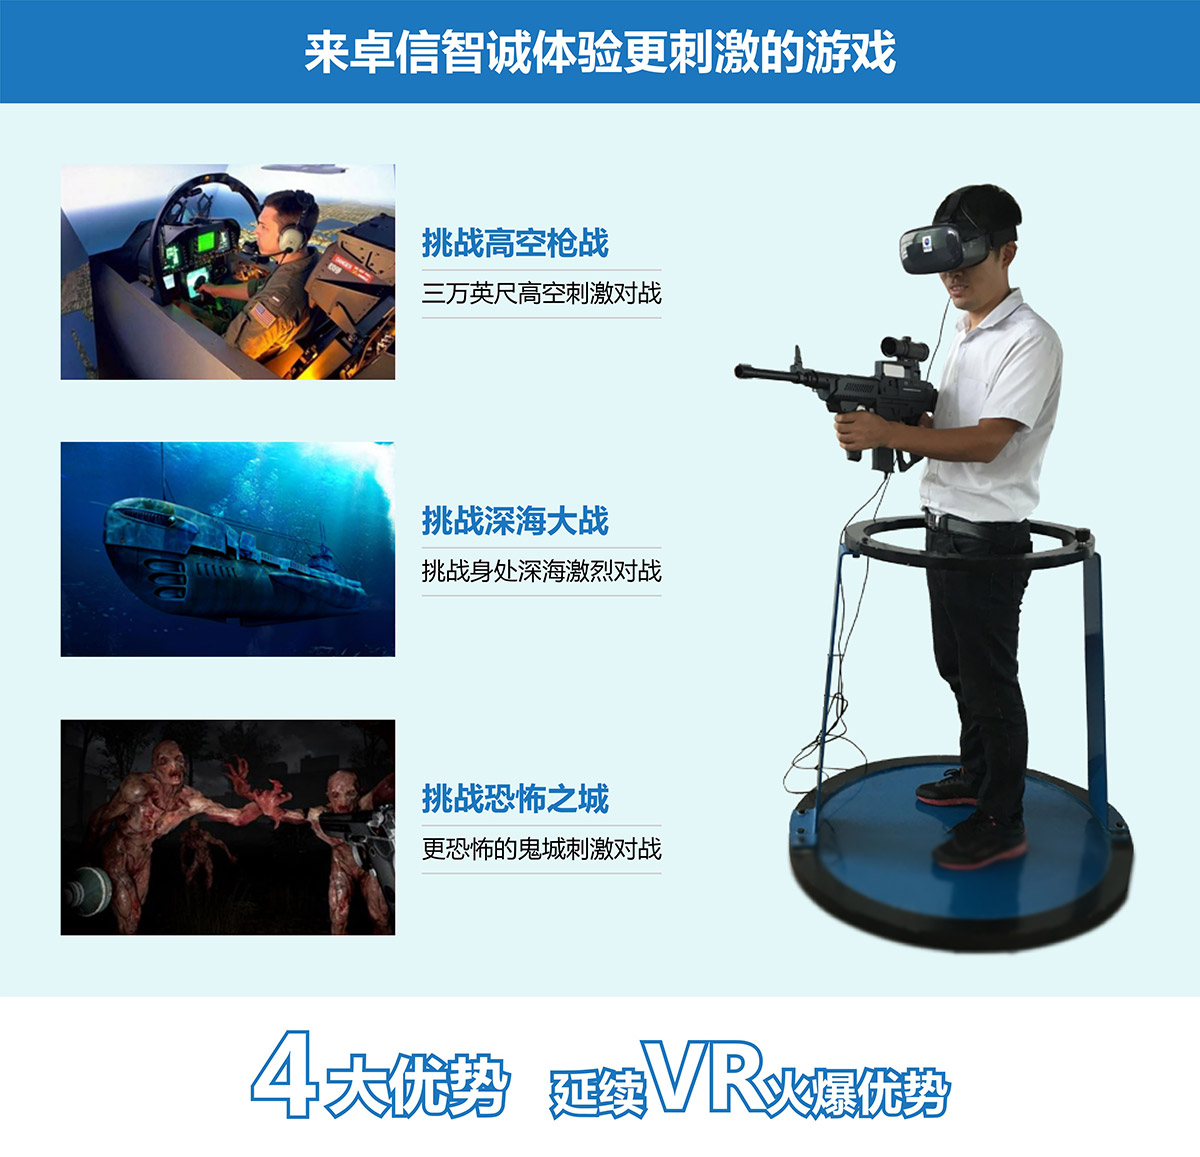 模拟安全VR对战4大优势延续vr火爆优势.jpg